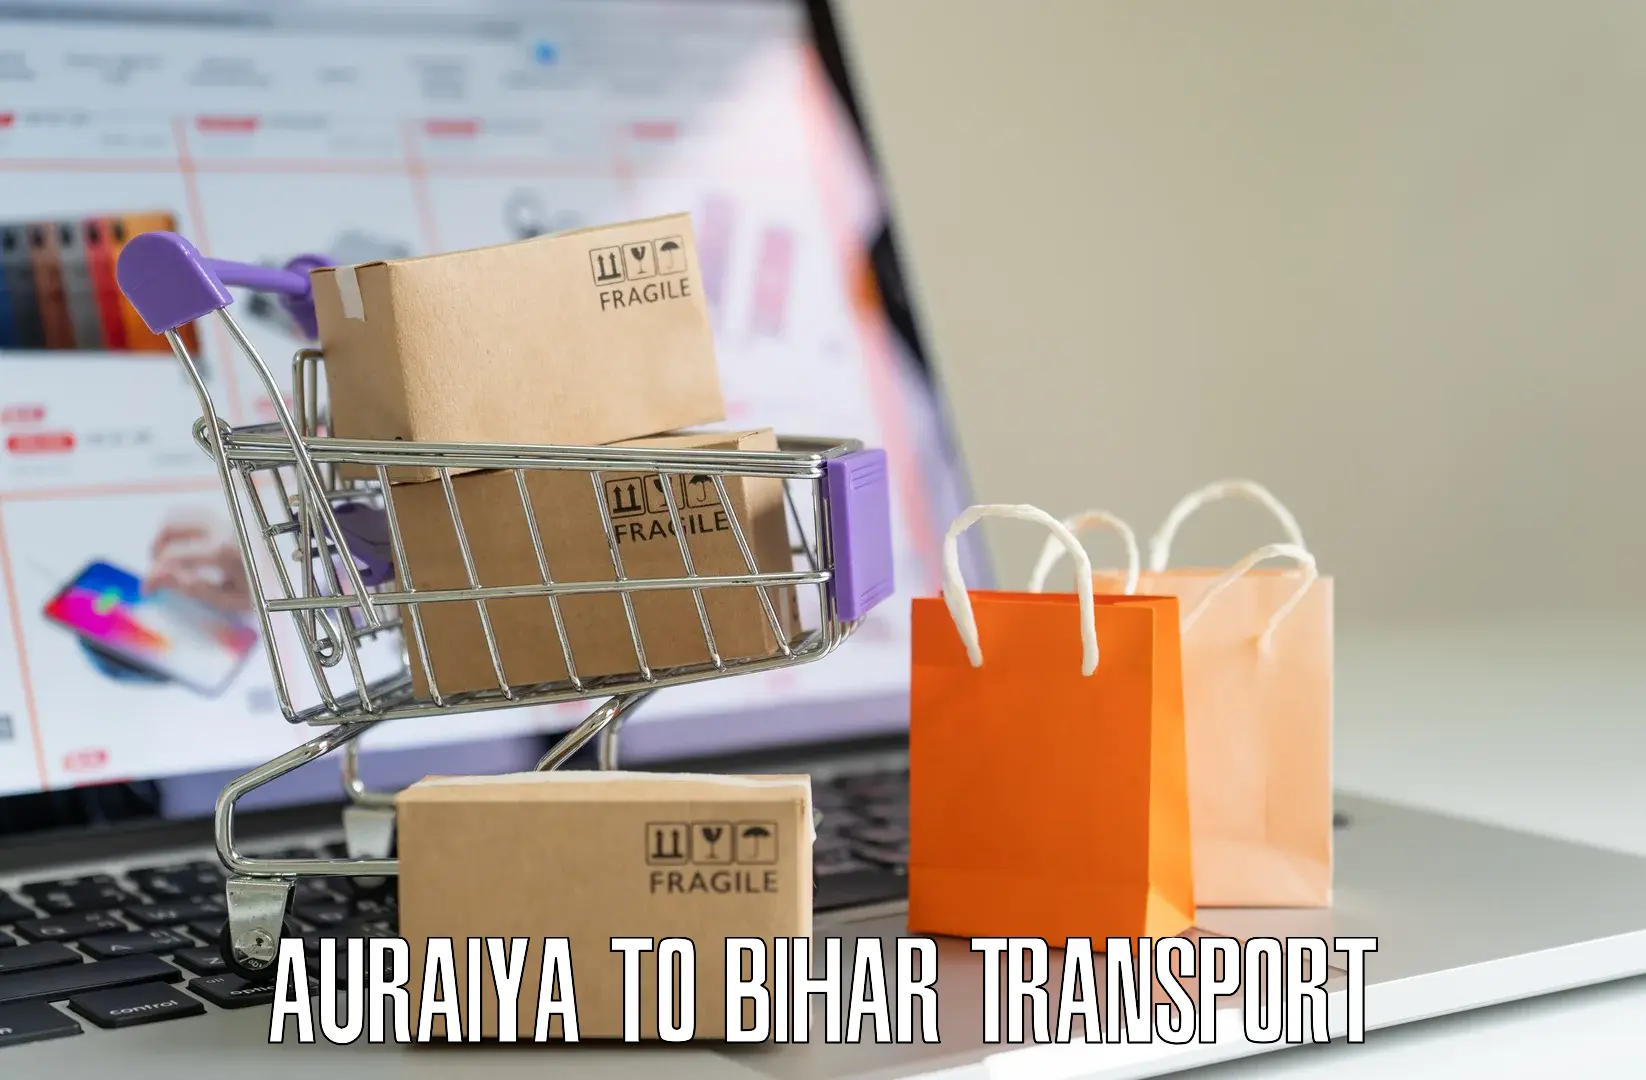 Bike transport service Auraiya to Bakhtiarpur